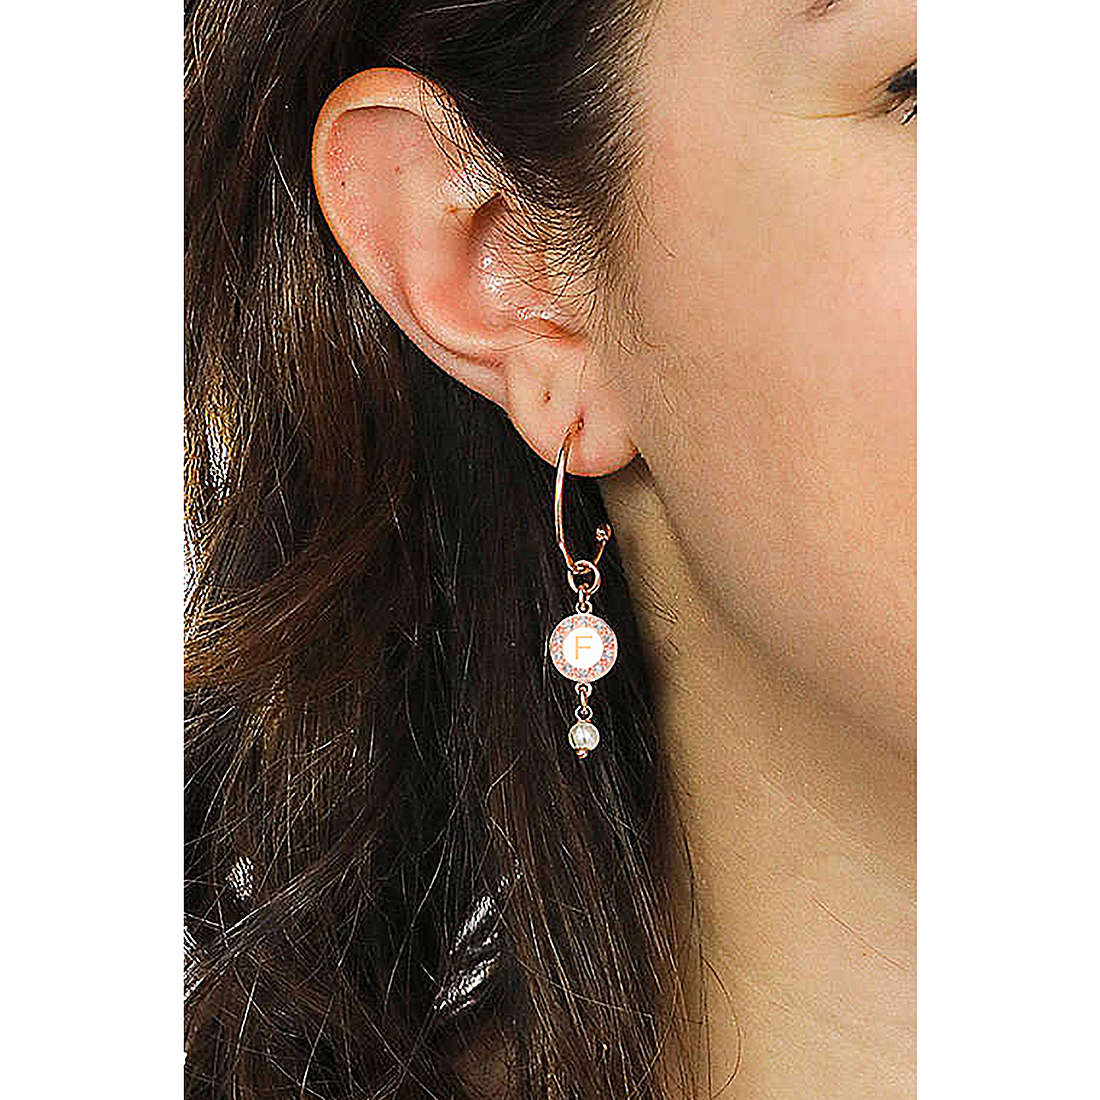 Dvccio earrings Kelly woman OTRESAGR-f wearing